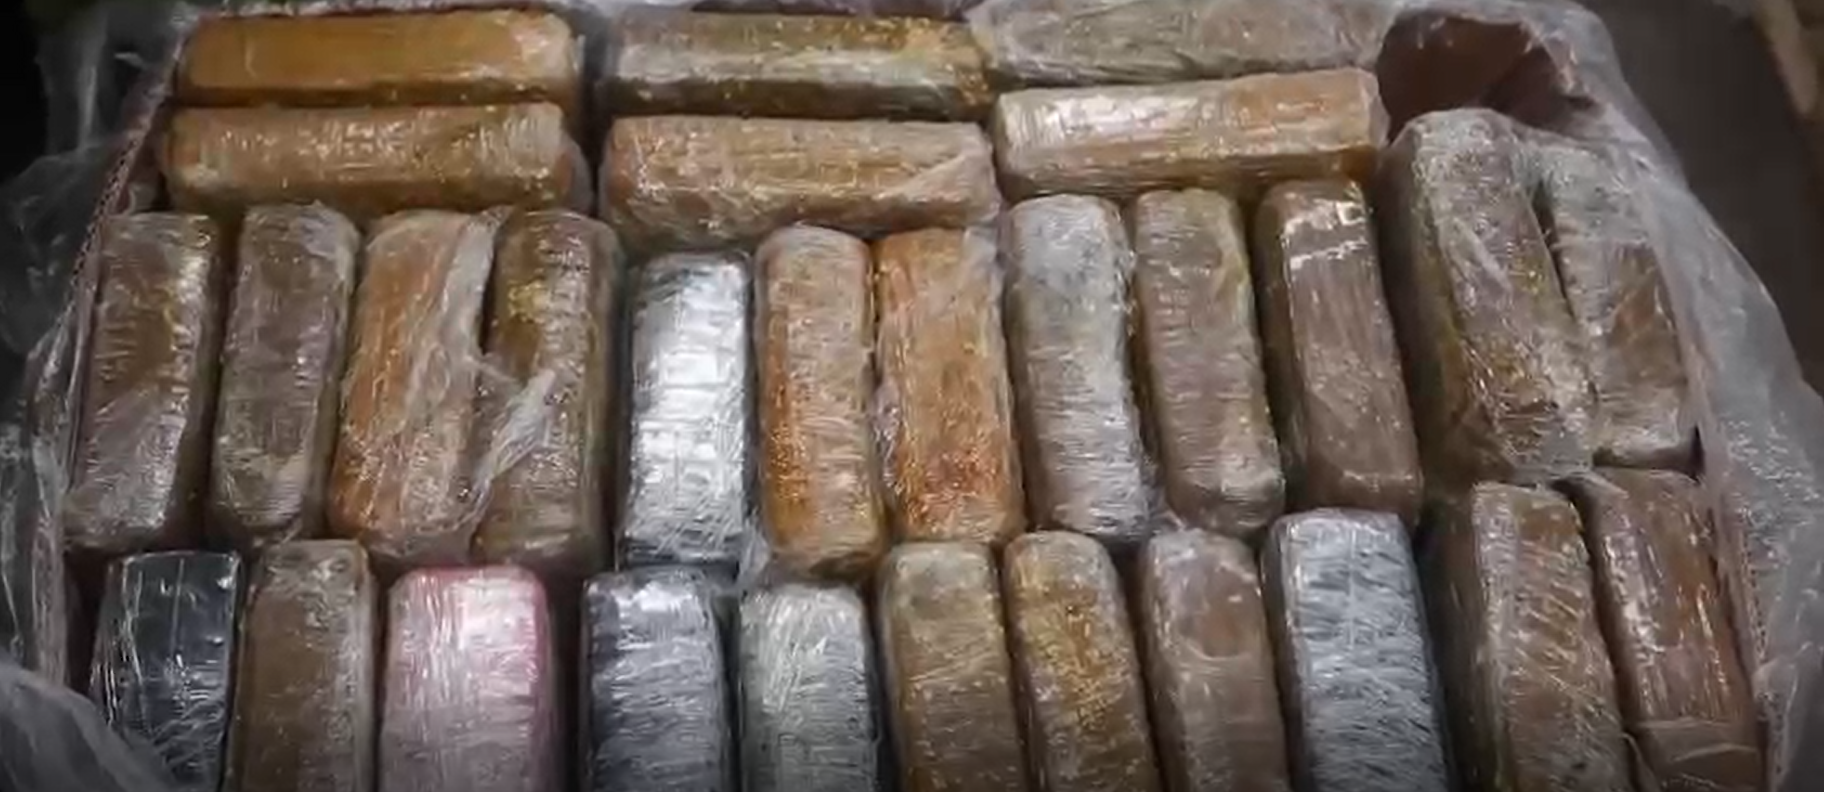 Hallan 1.6 toneladas de cocaína en cajas de bananos